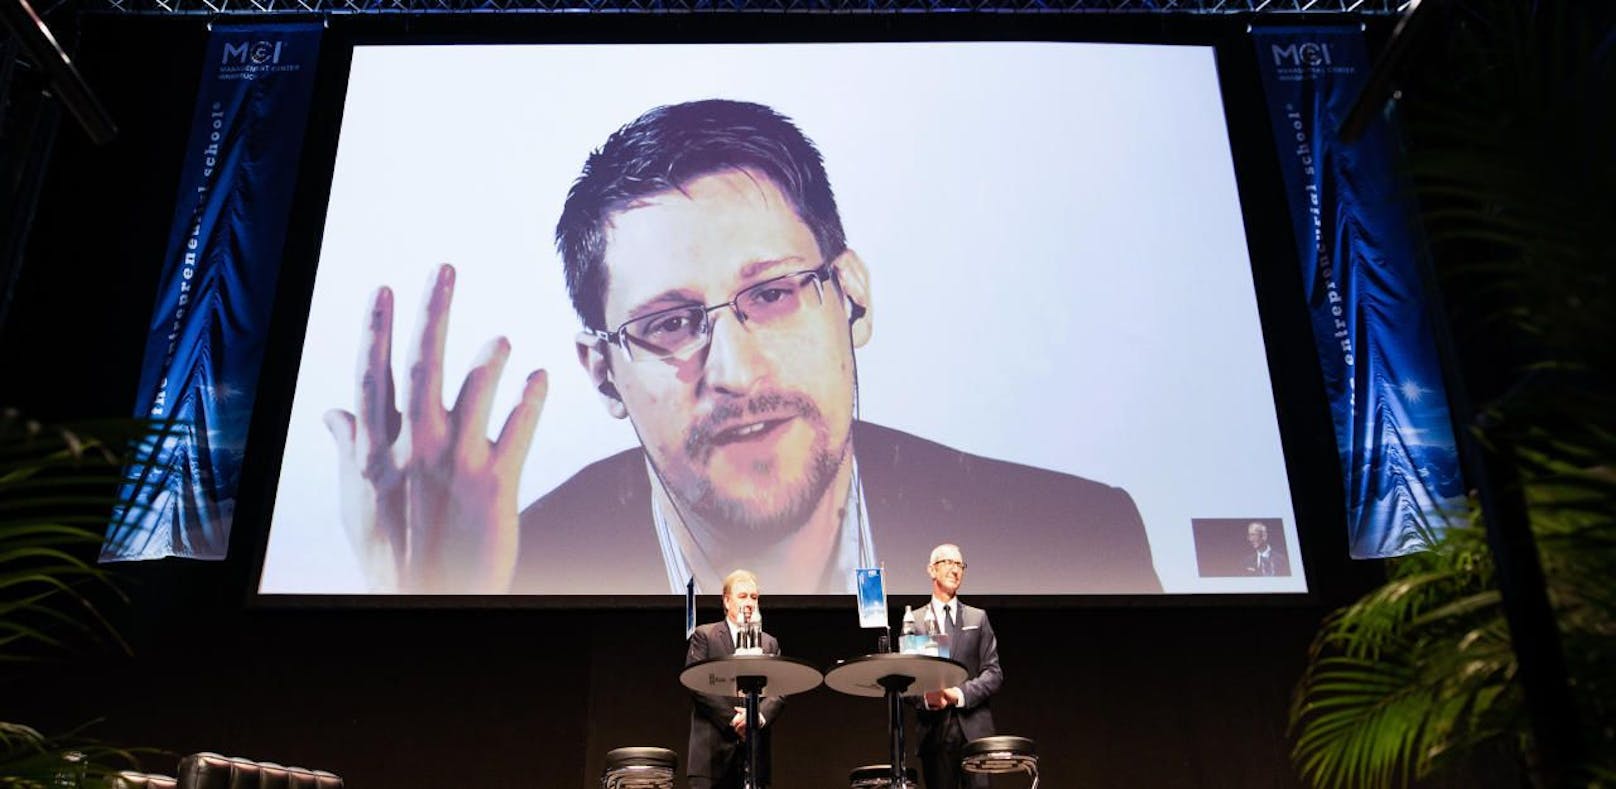 Dialog mit Edward Snowden am MCI.